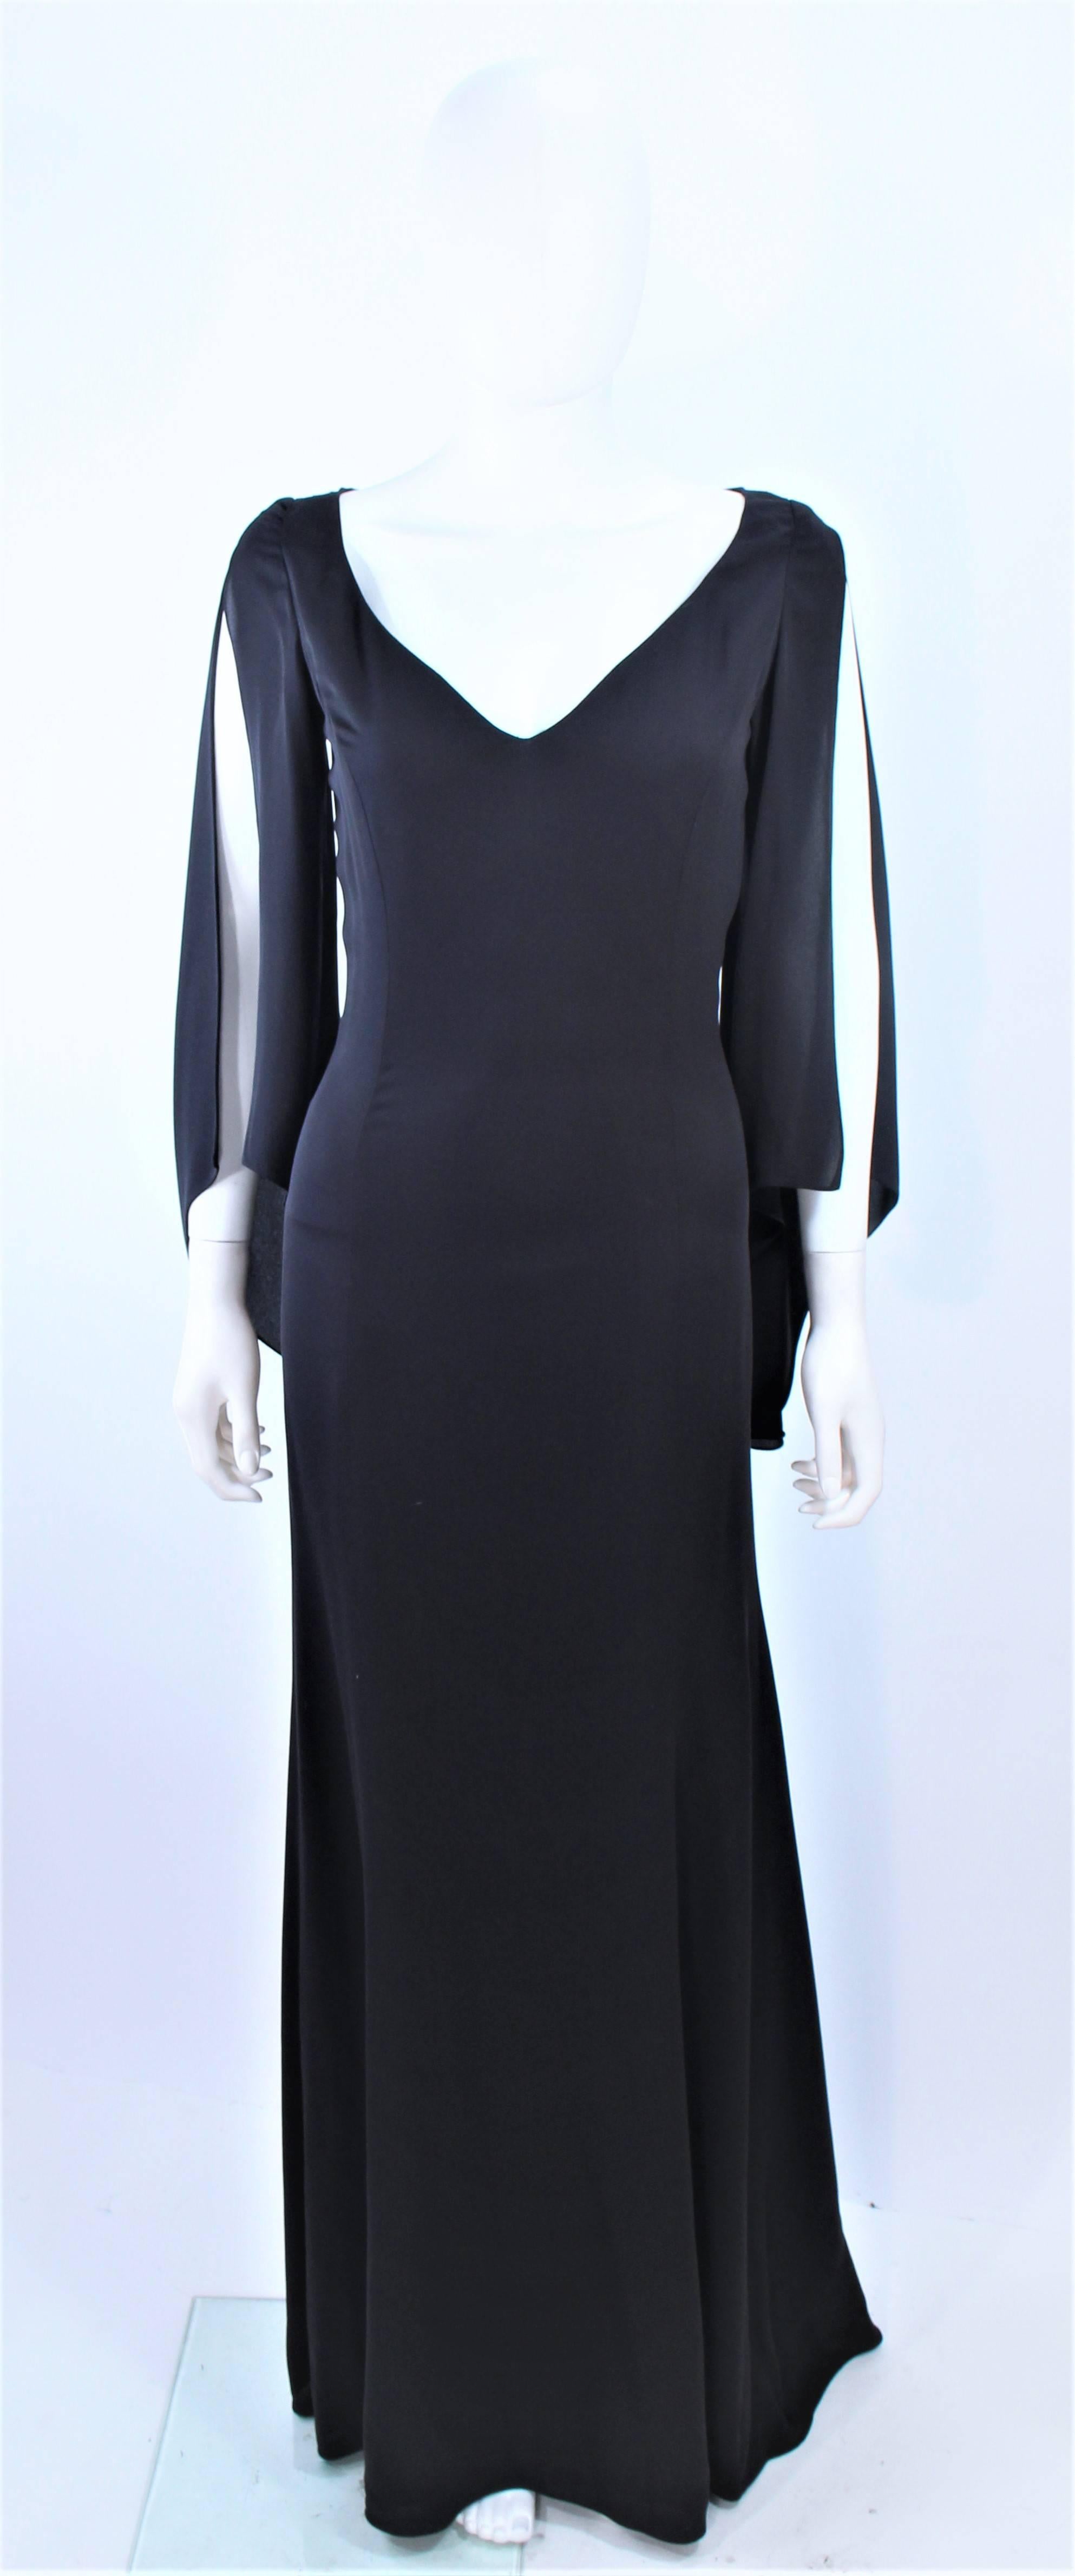 Cette robe Carolina Herrera est composée d'une mousseline de soie noire avec des manches drapées de style ouvert. Il y a une fermeture à glissière. Vintage, en excellent état.

**Veuillez croiser les mesures pour une précision personnelle. La